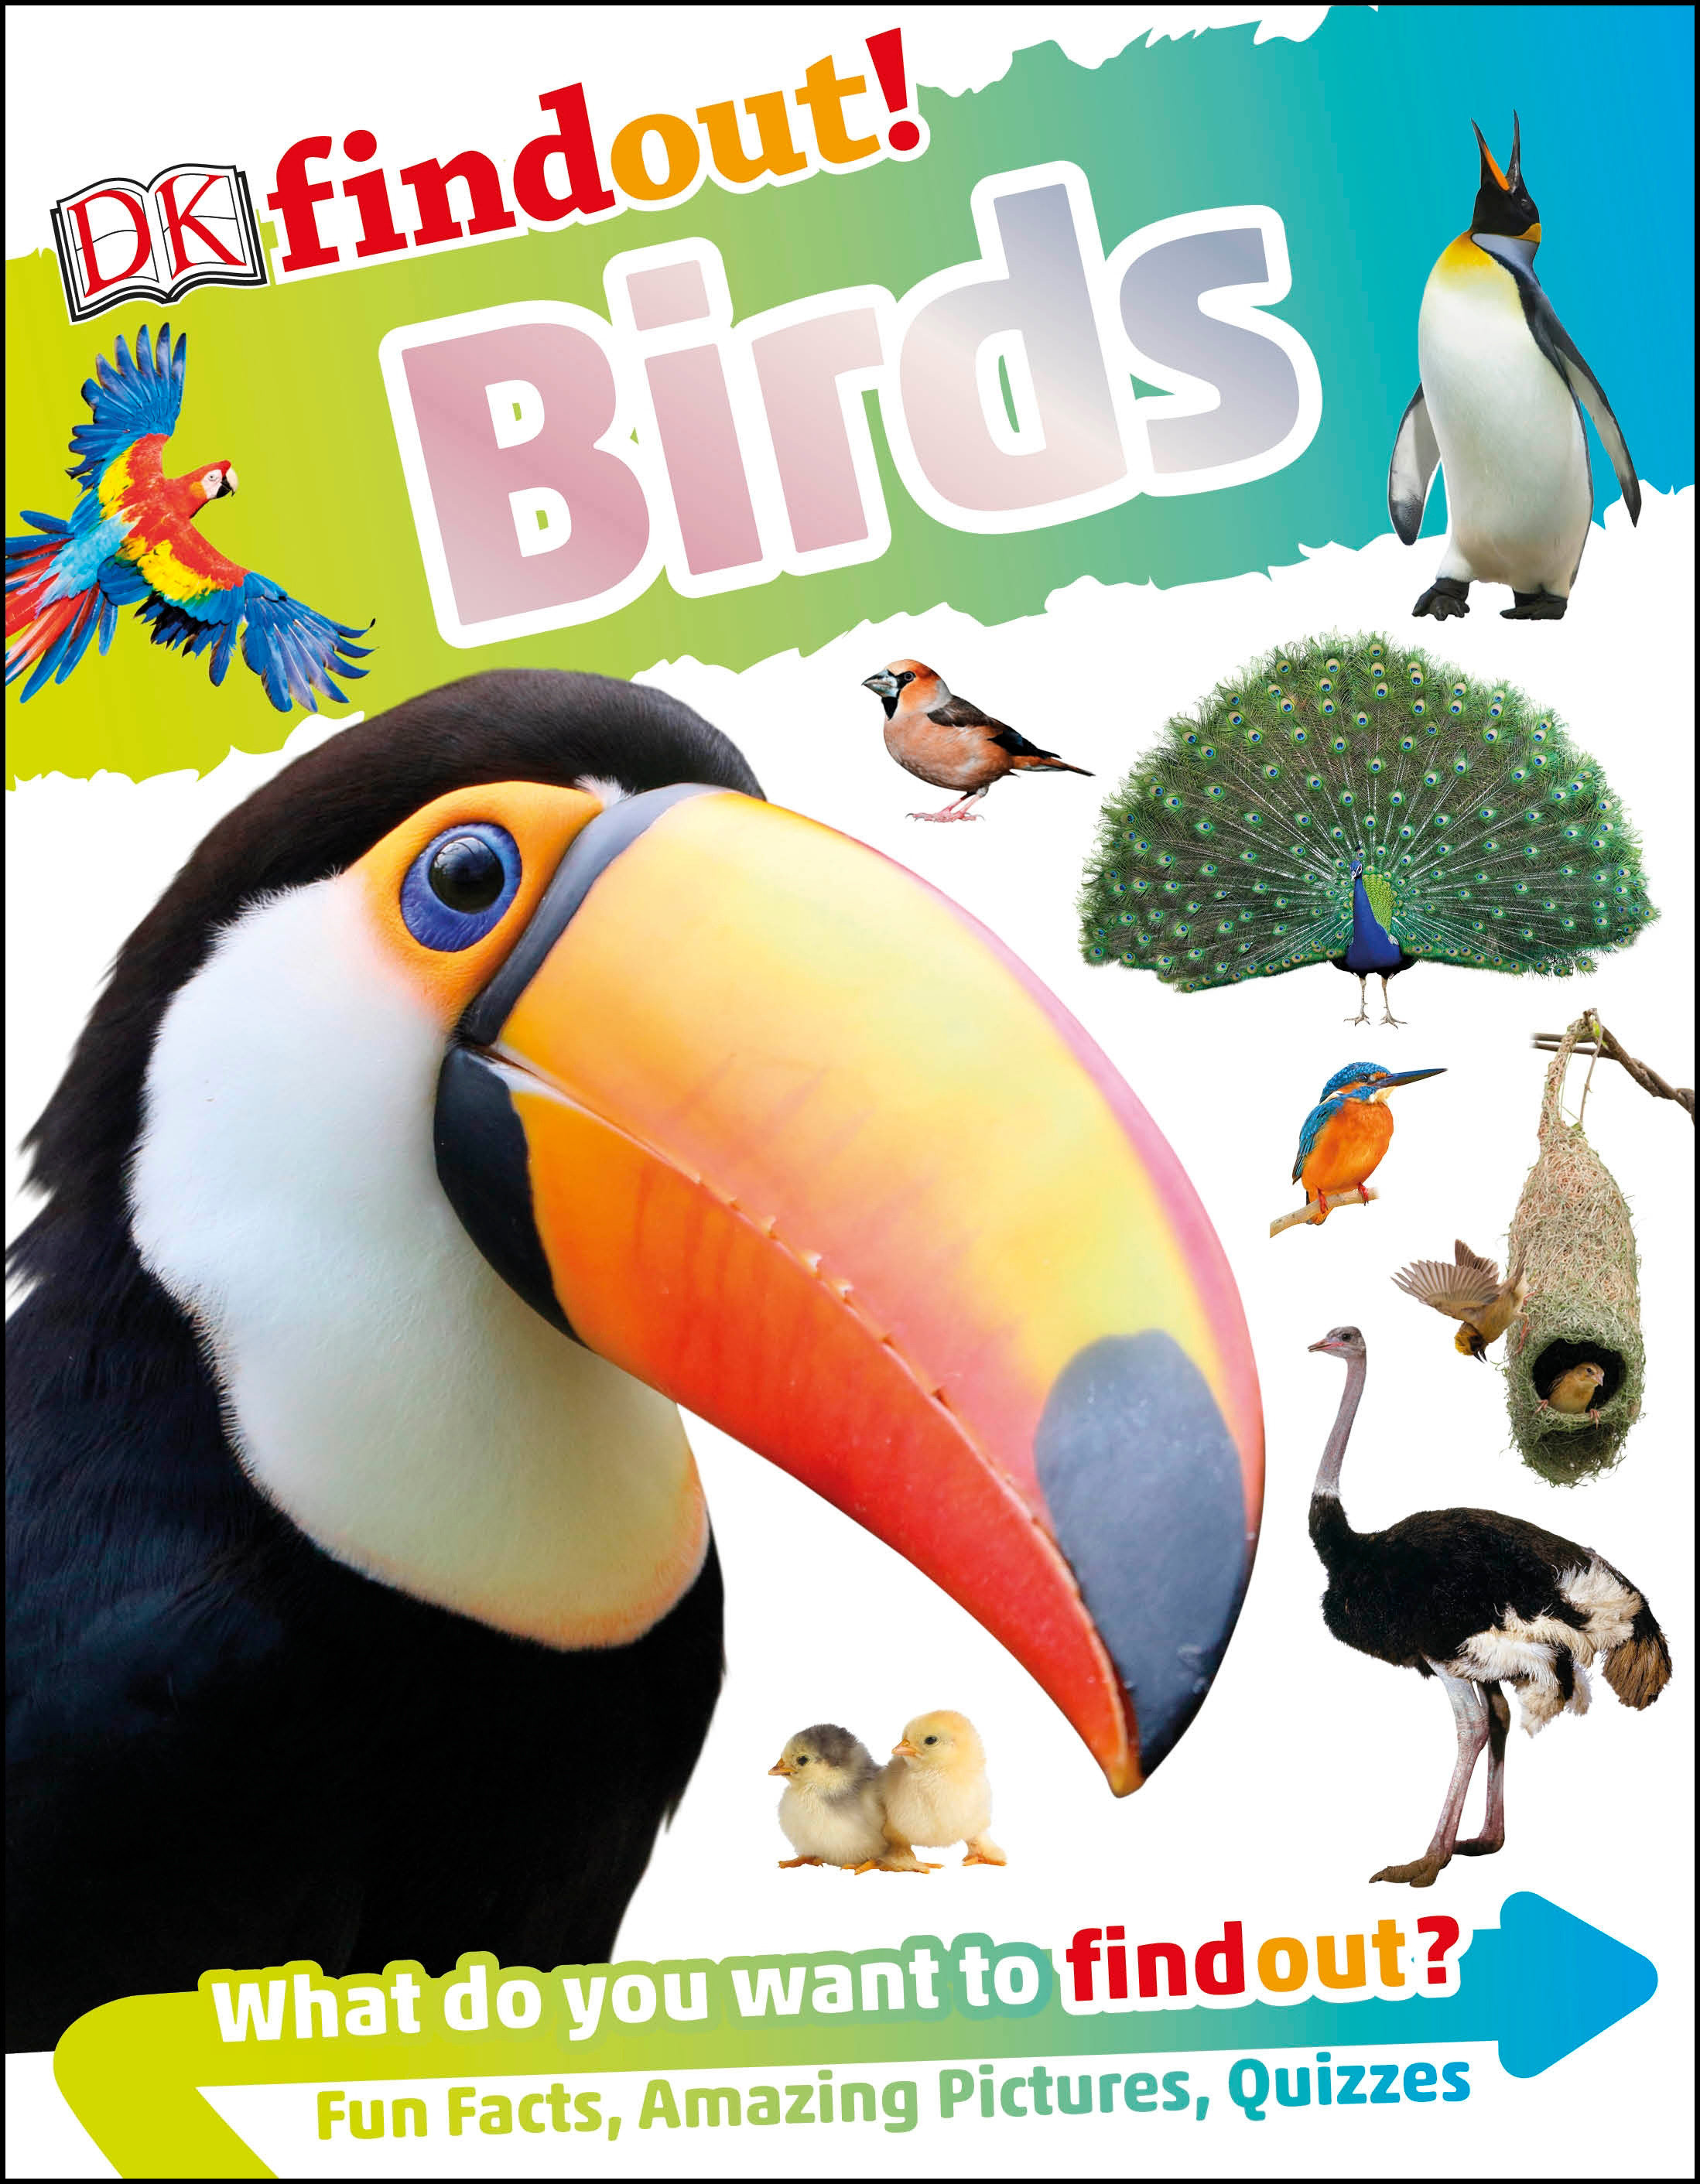 DK Findout Volume 2 Birds